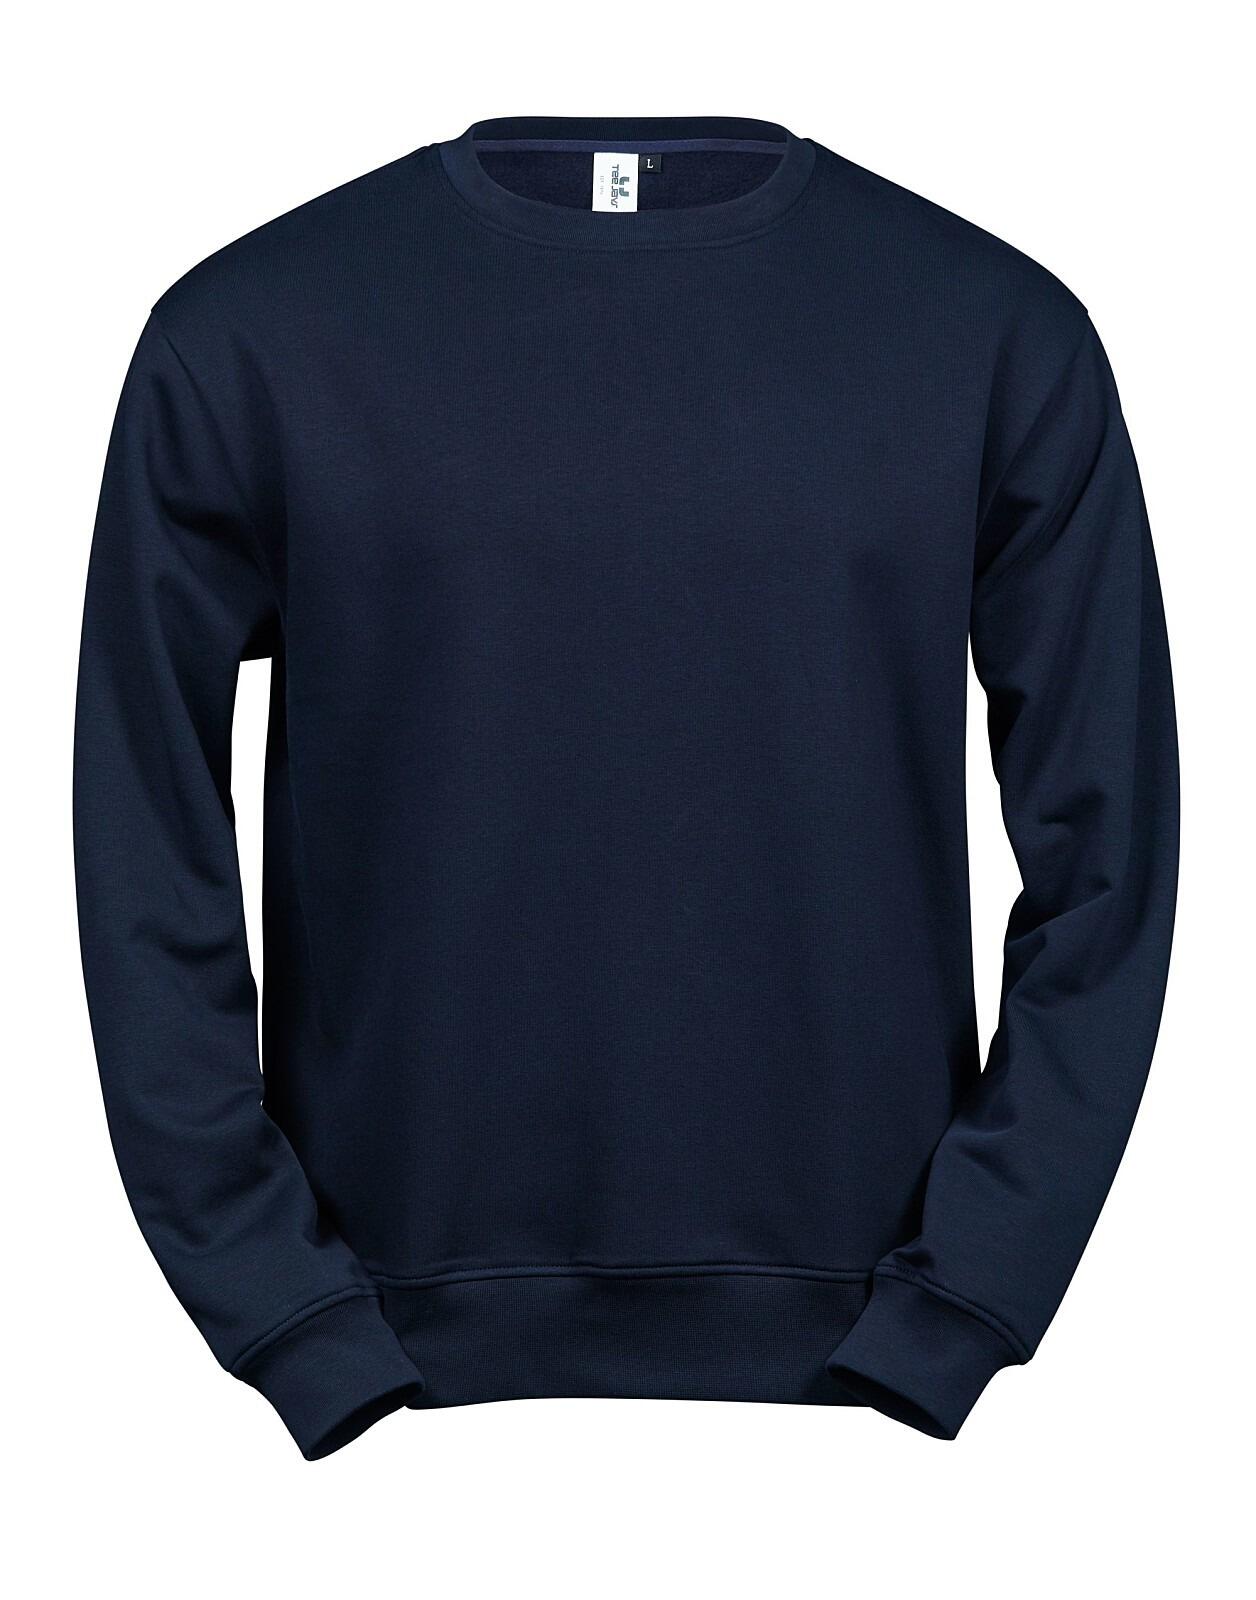 Tee Jays Power Sweatshirt | TJ5100 | Workwear Supermarket